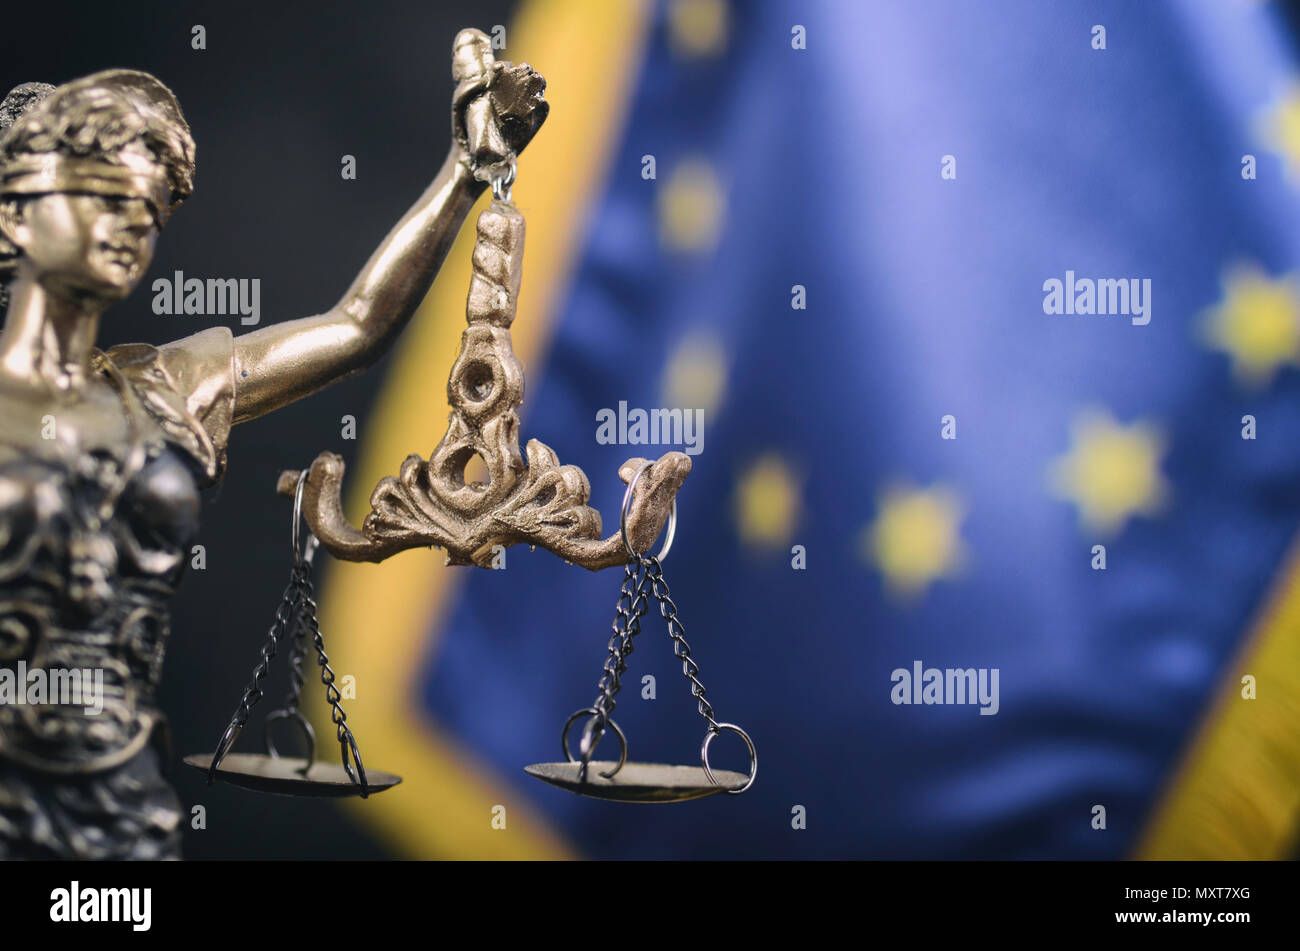 La ley y la justicia, el concepto de legalidad, escalas de Justicia, justitia, Lady Justice delante de la bandera de la Unión Europea en el fondo. Foto de stock